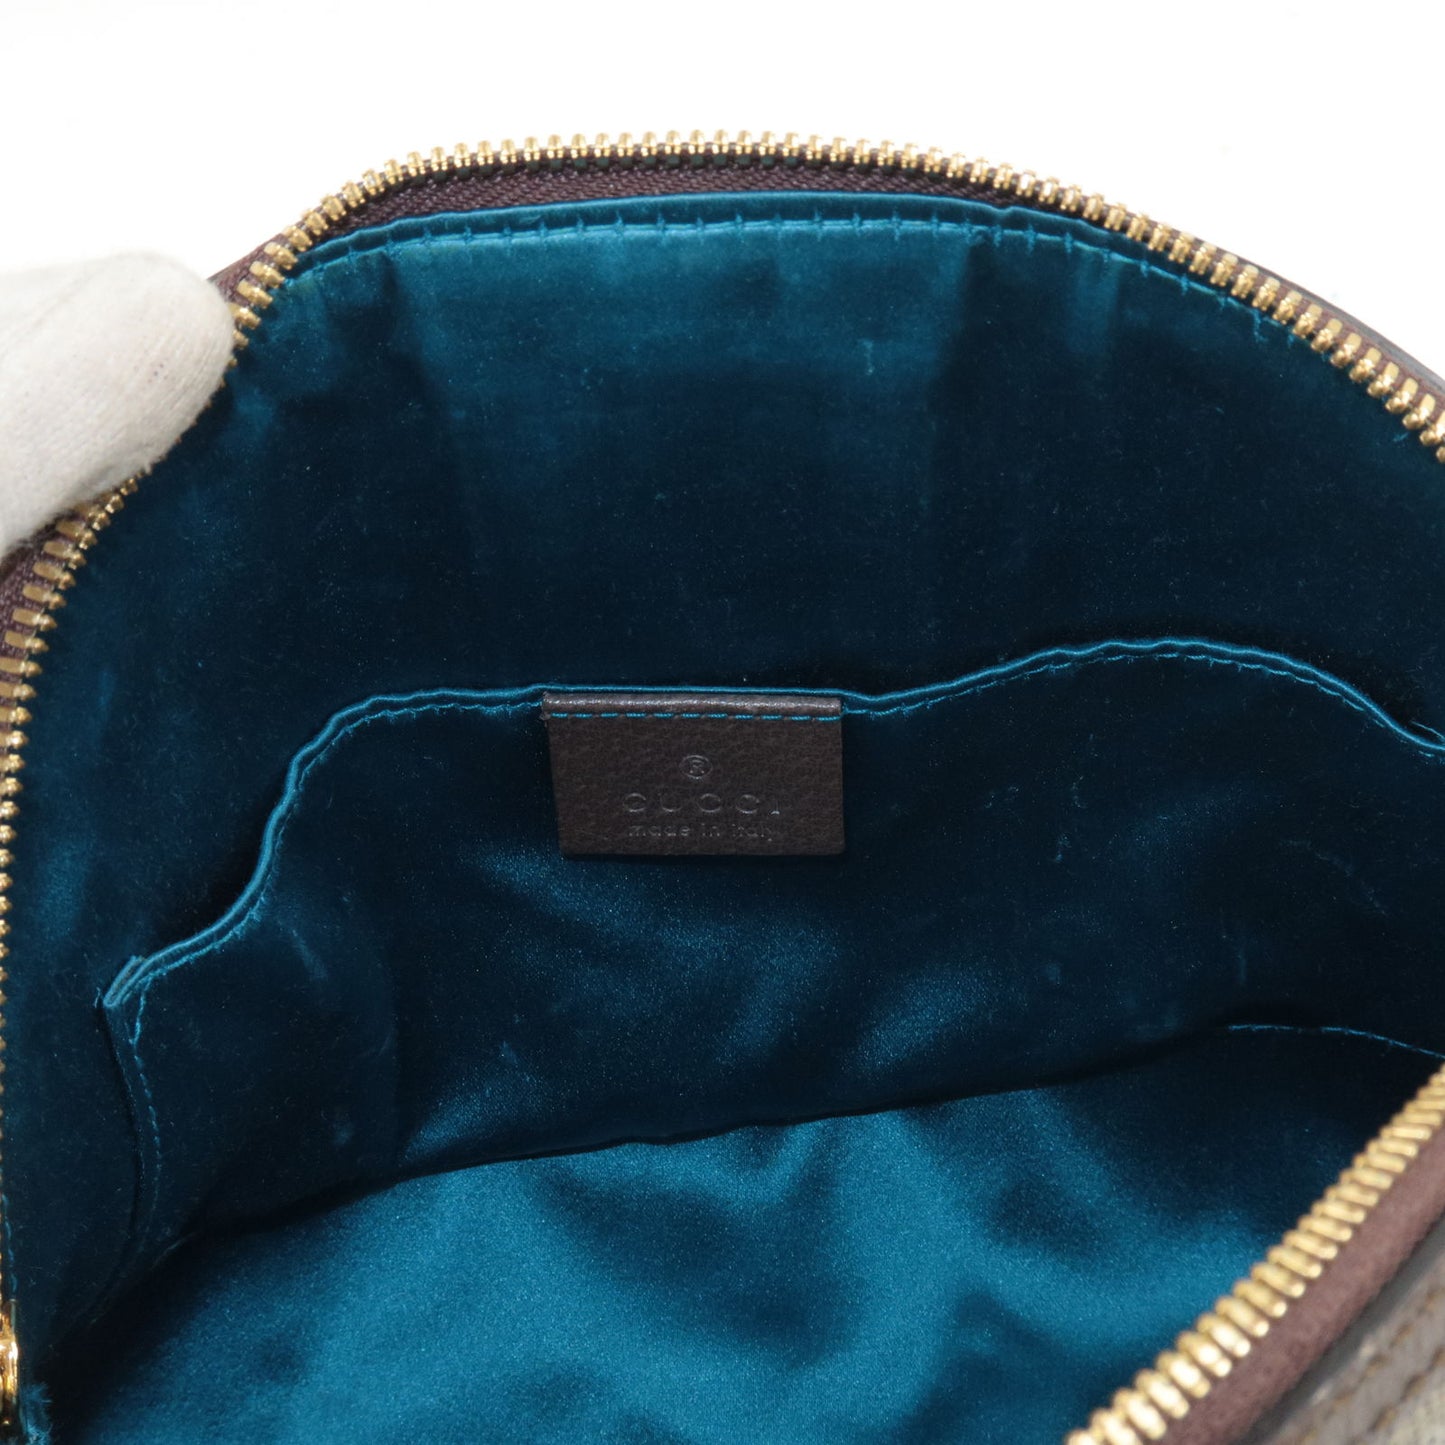 GUCCI Ophidia GG Supreme Leather Shoulder Bag Beige 499621